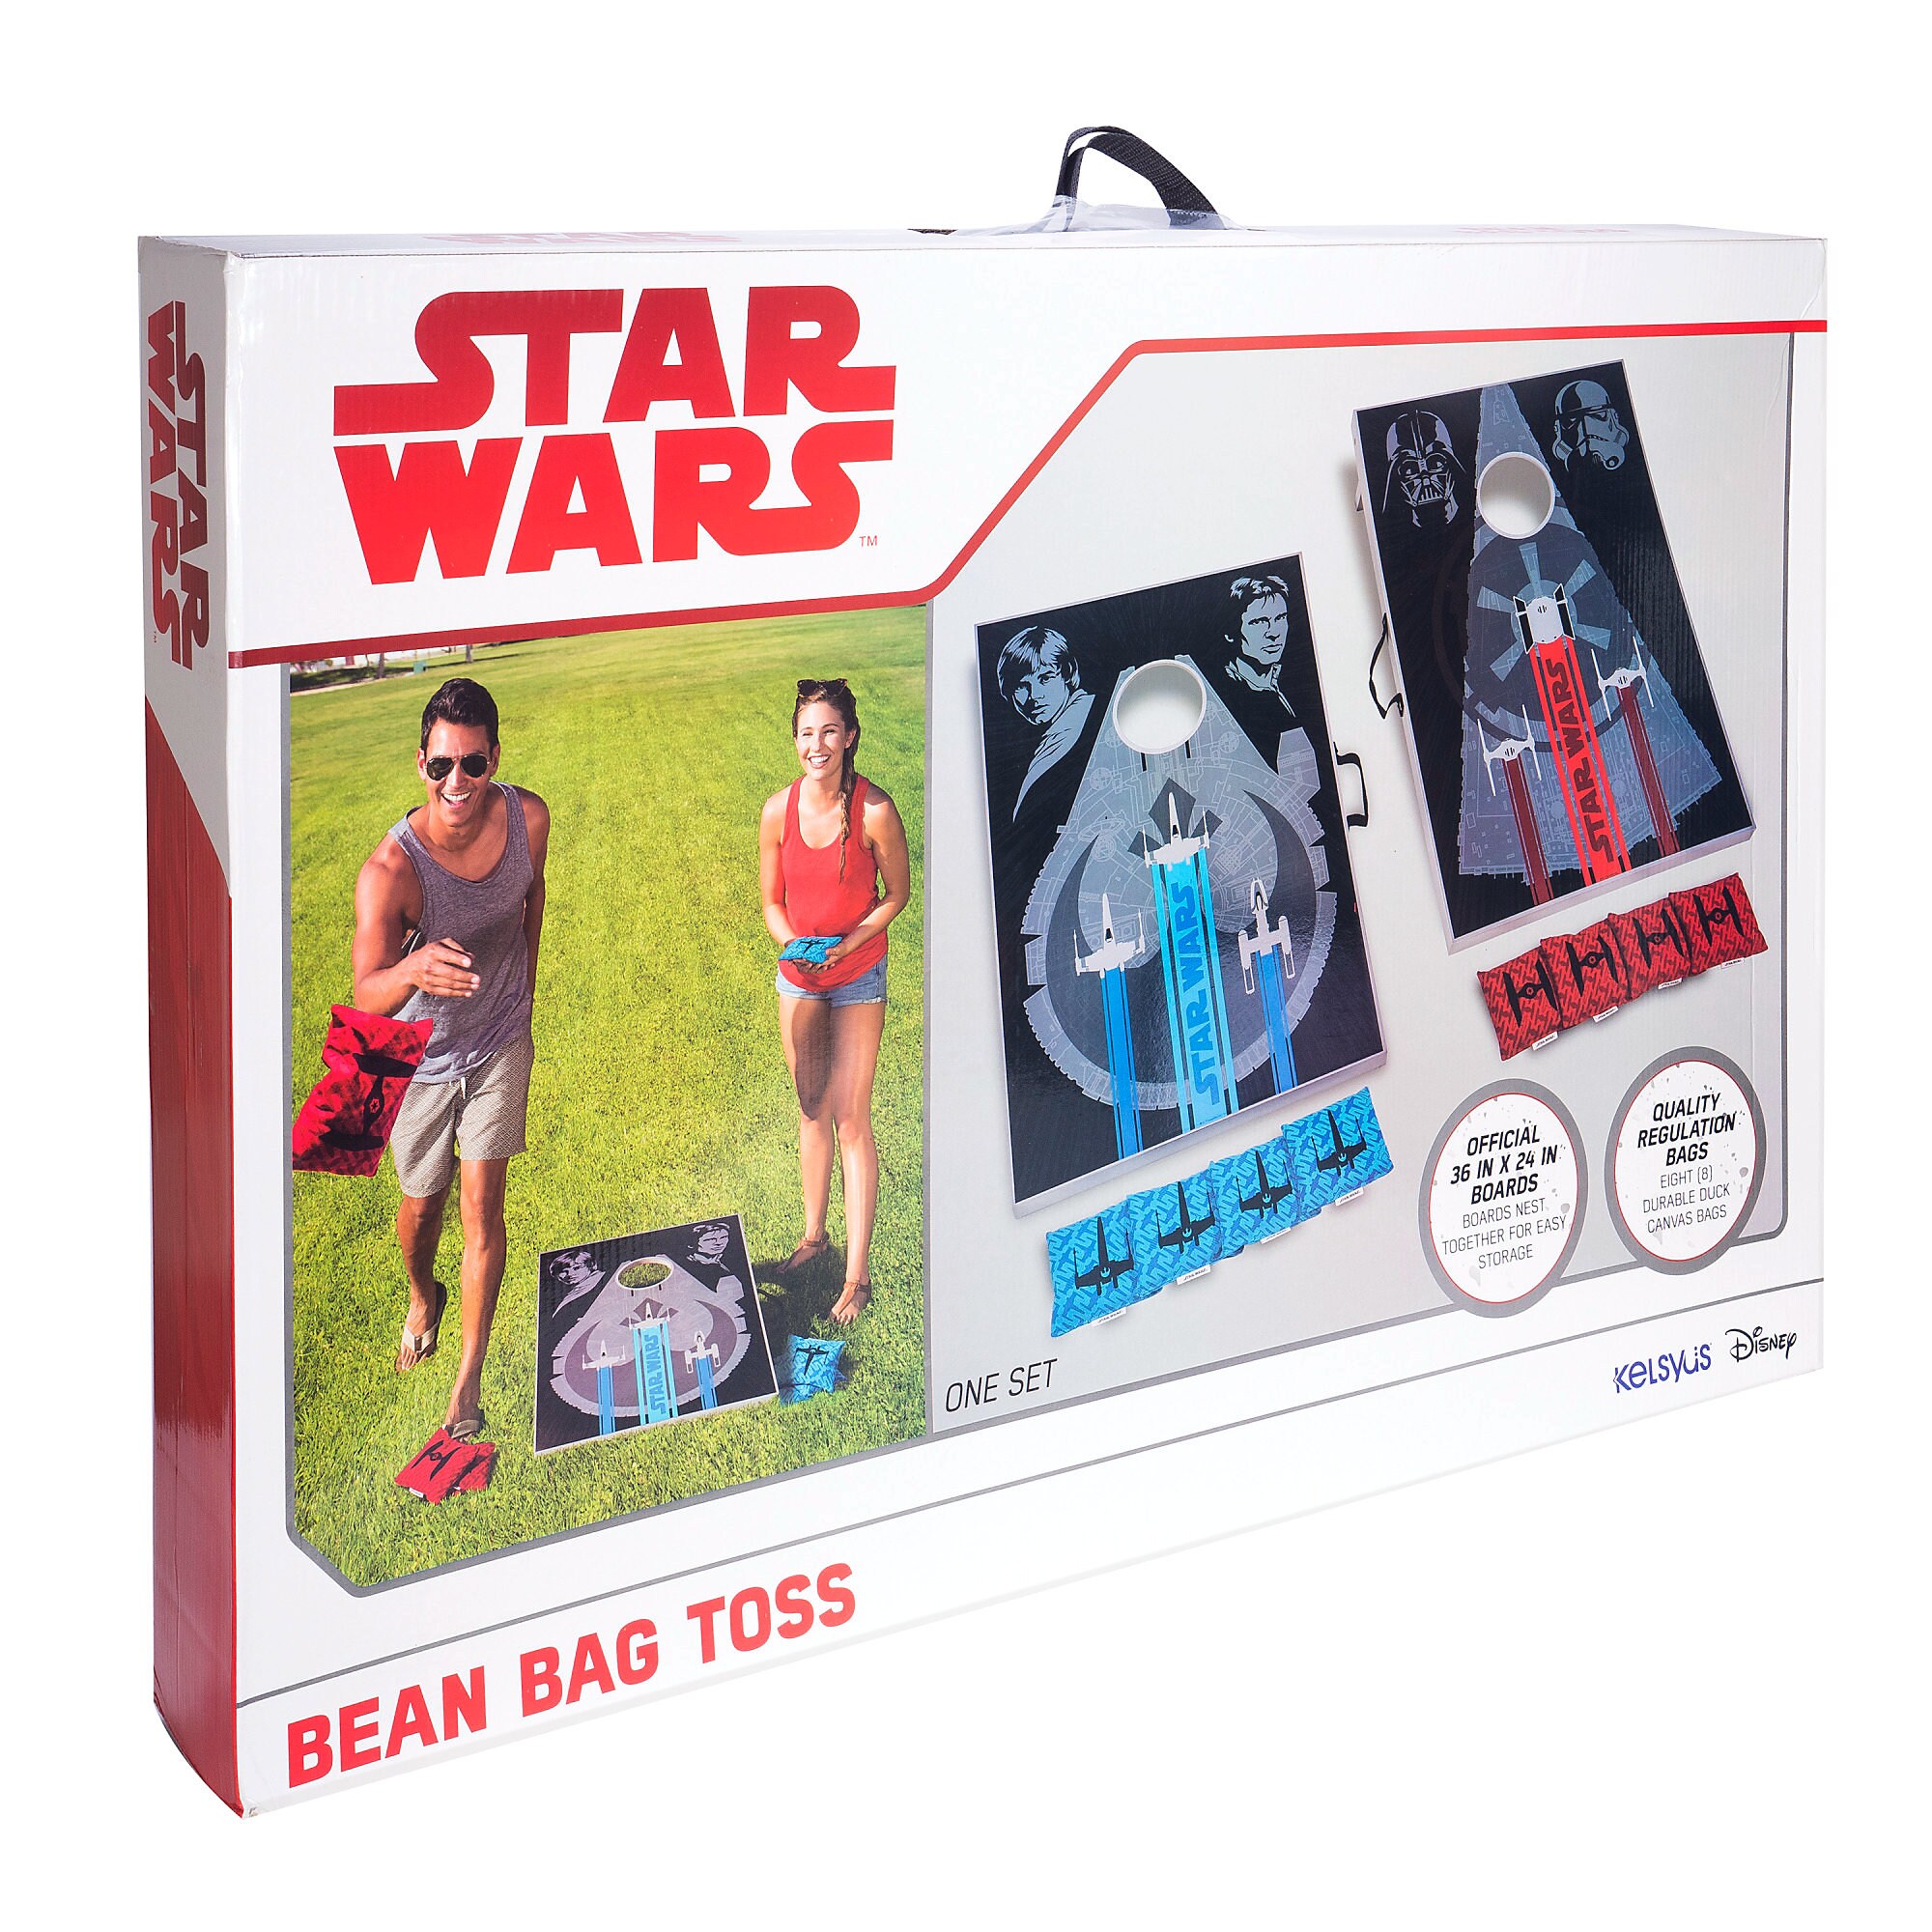 Star Wars Bean Bag Toss Game